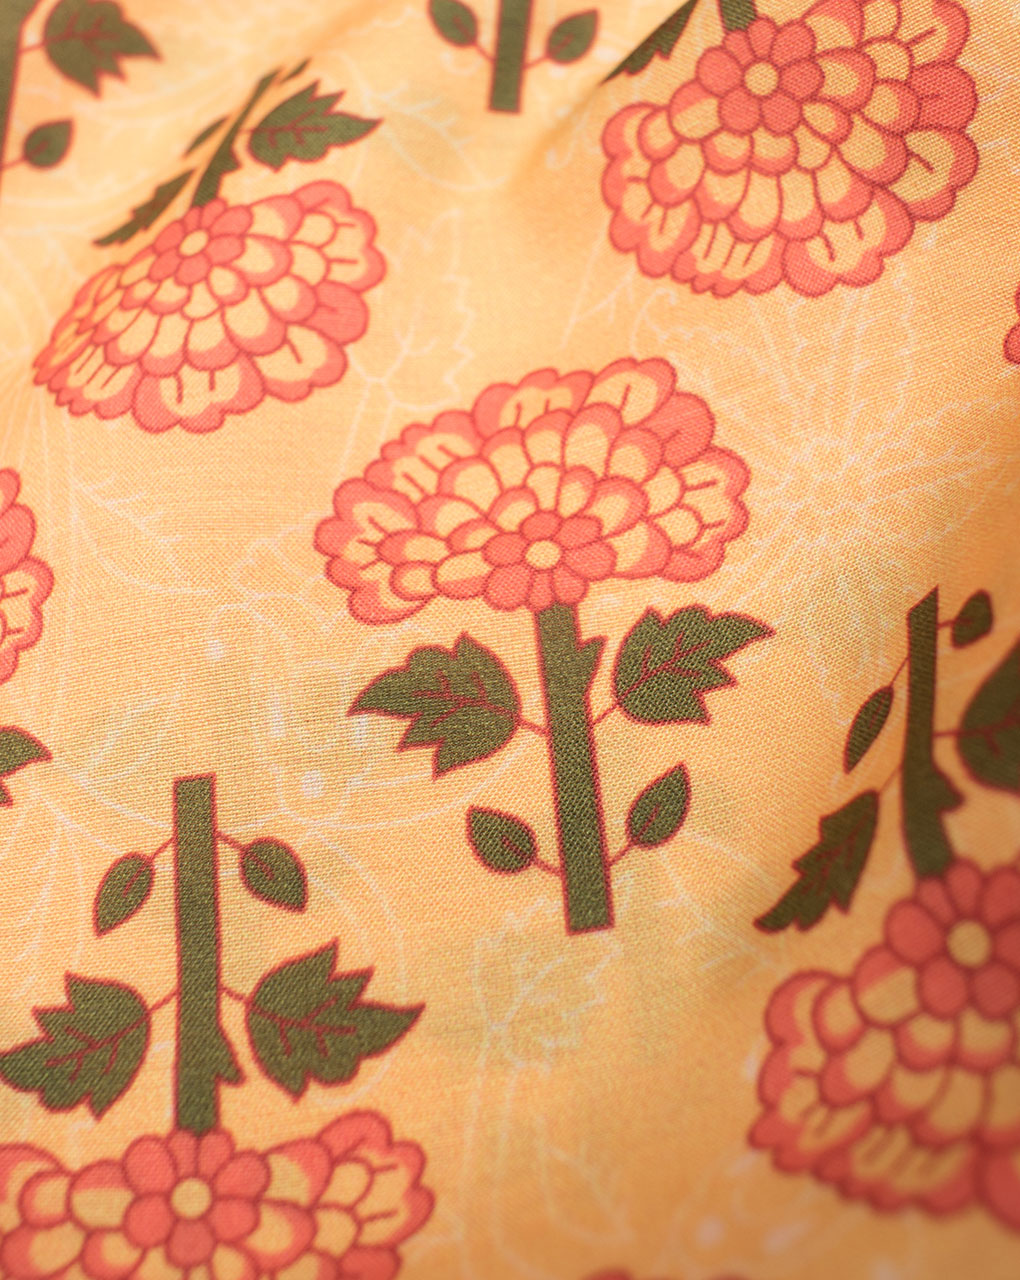 Mughal Digital Print Muslin Fabric - Fabriclore.com